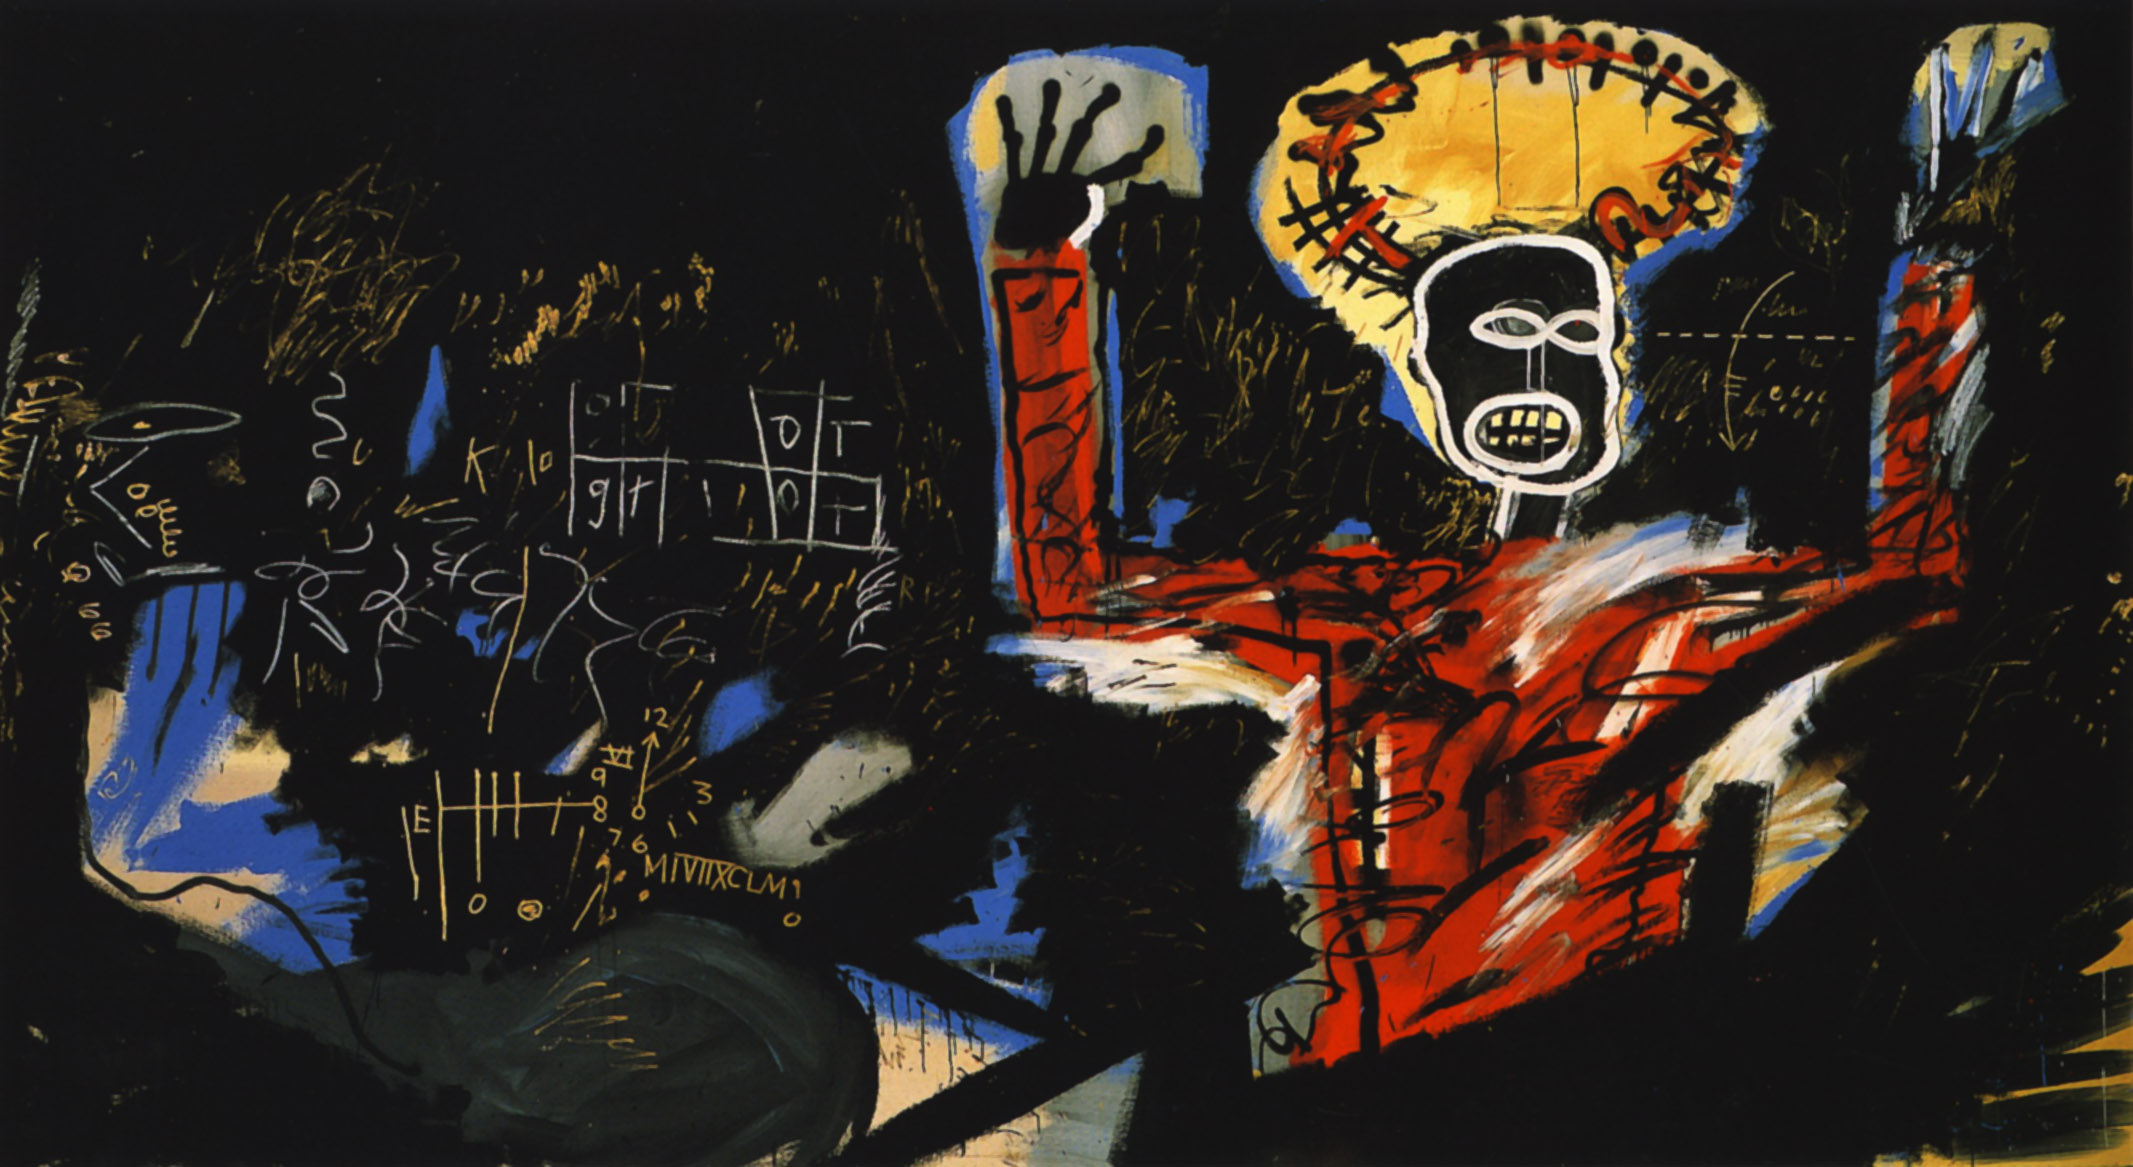 Kâr I by Jean-Michel Basquiat - 1982 - 220 x 400 cm özel koleksiyon